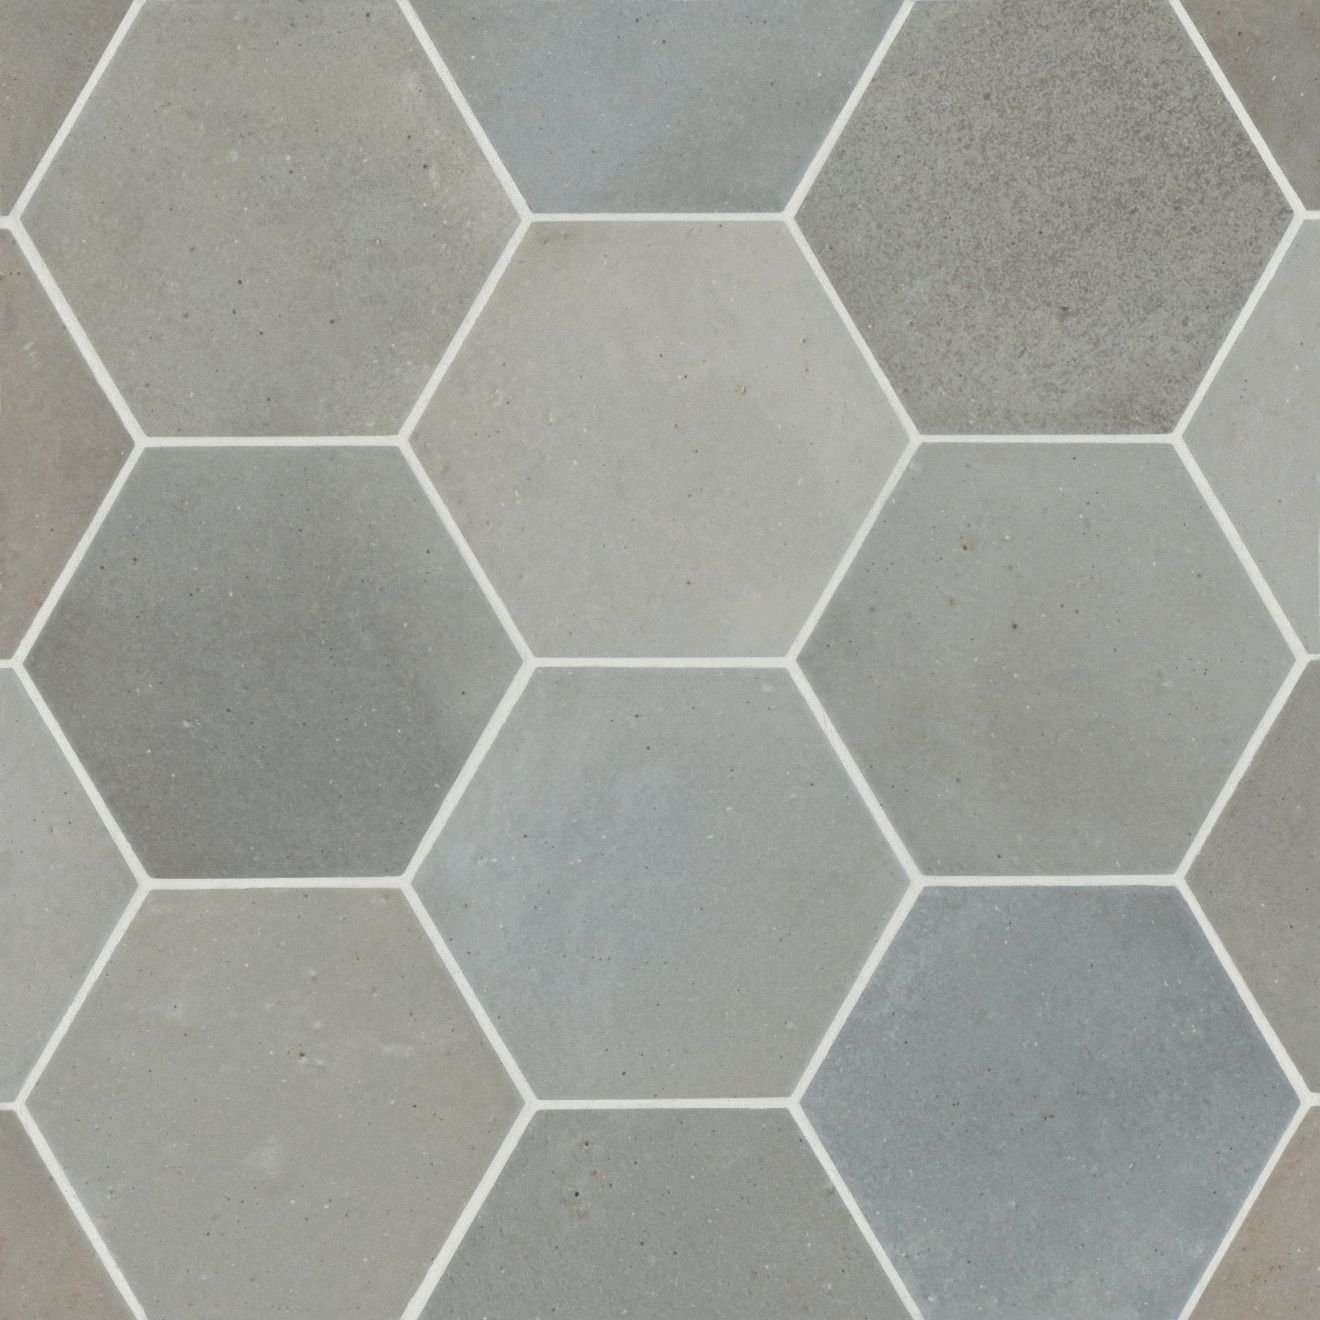 Celine 4" Hexagon Matte Porcelain Floor & Wall Tile in Blue | Bedrosians Tile & Stone